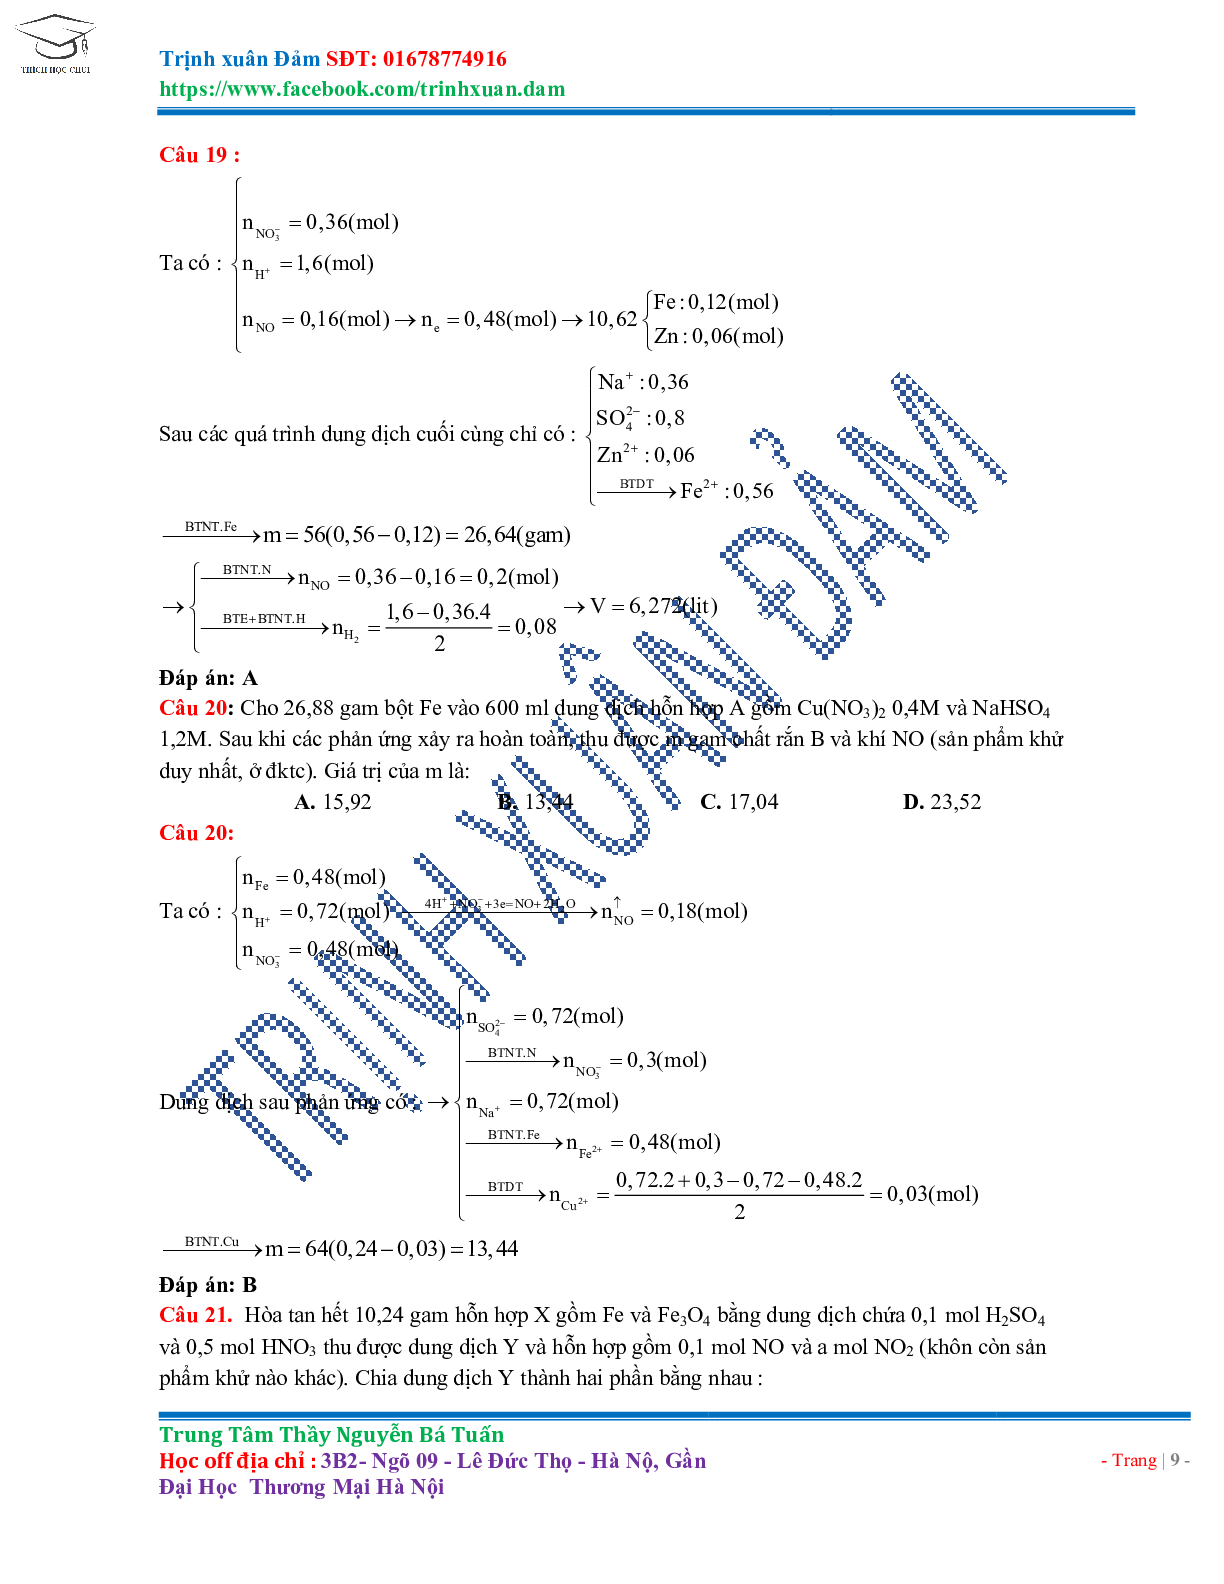 Bài toán chuyên đề HNO3 môn Hóa học lớp 11 (trang 9)